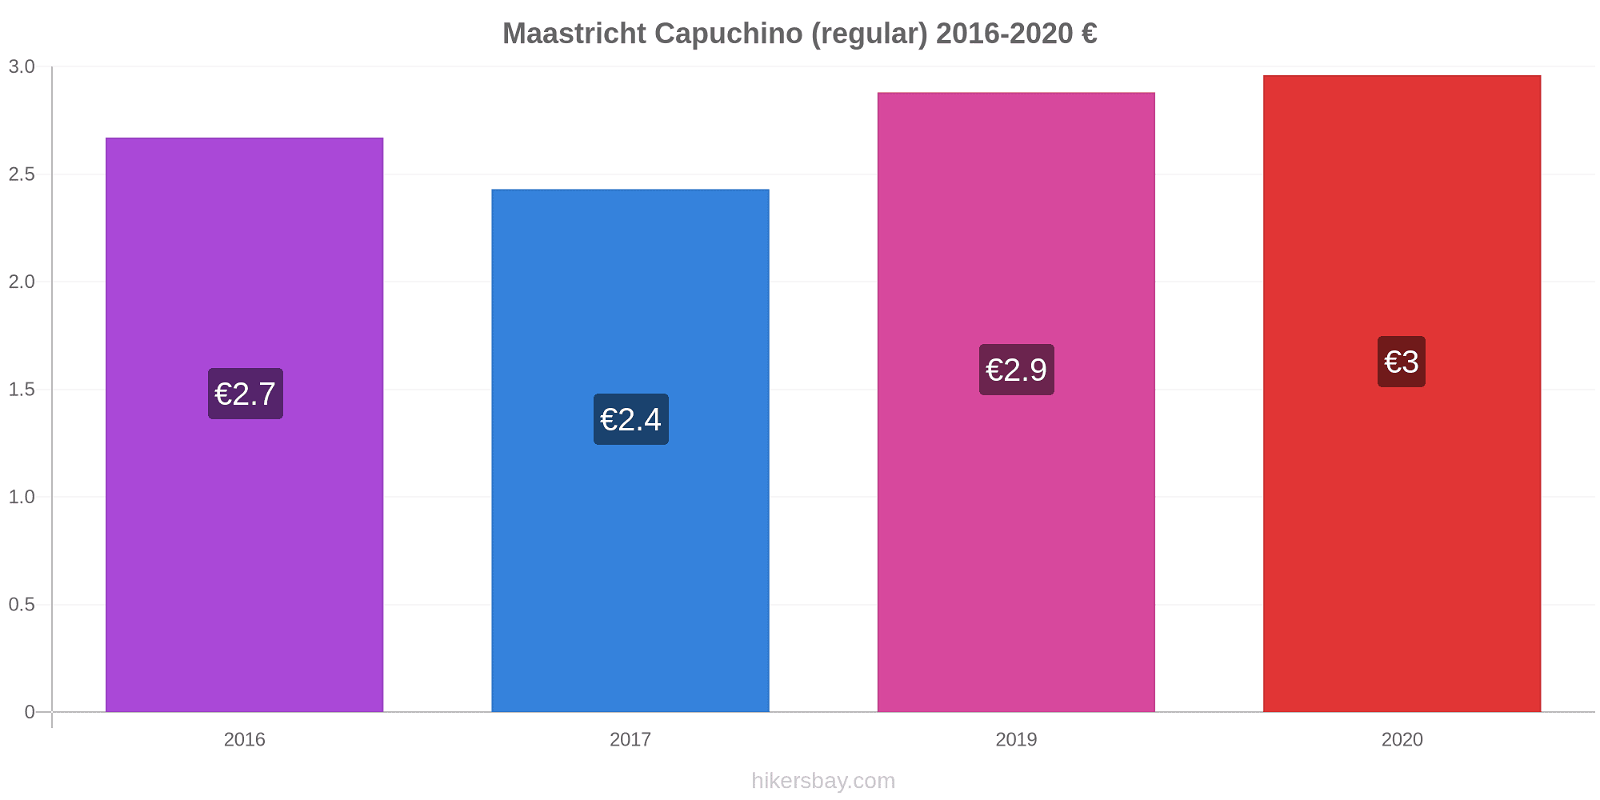 Maastricht cambios de precios Capuchino (regular) hikersbay.com